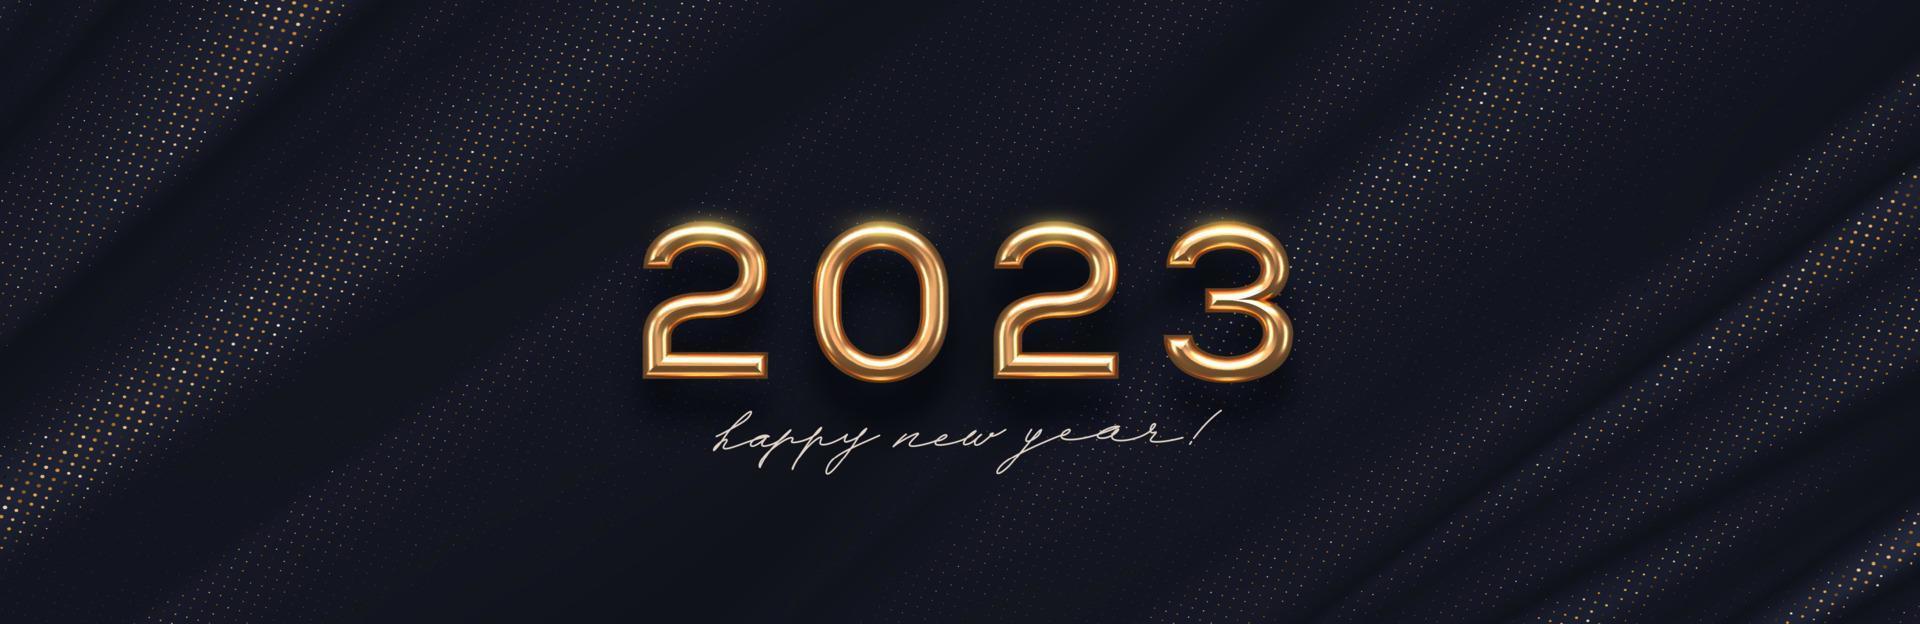 logotipo dourado do ano novo de 2023 em fundo têxtil preto abstrato. design de saudação com número de metal dourado realista do ano. design para cartão, convite, calendário, etc. vetor